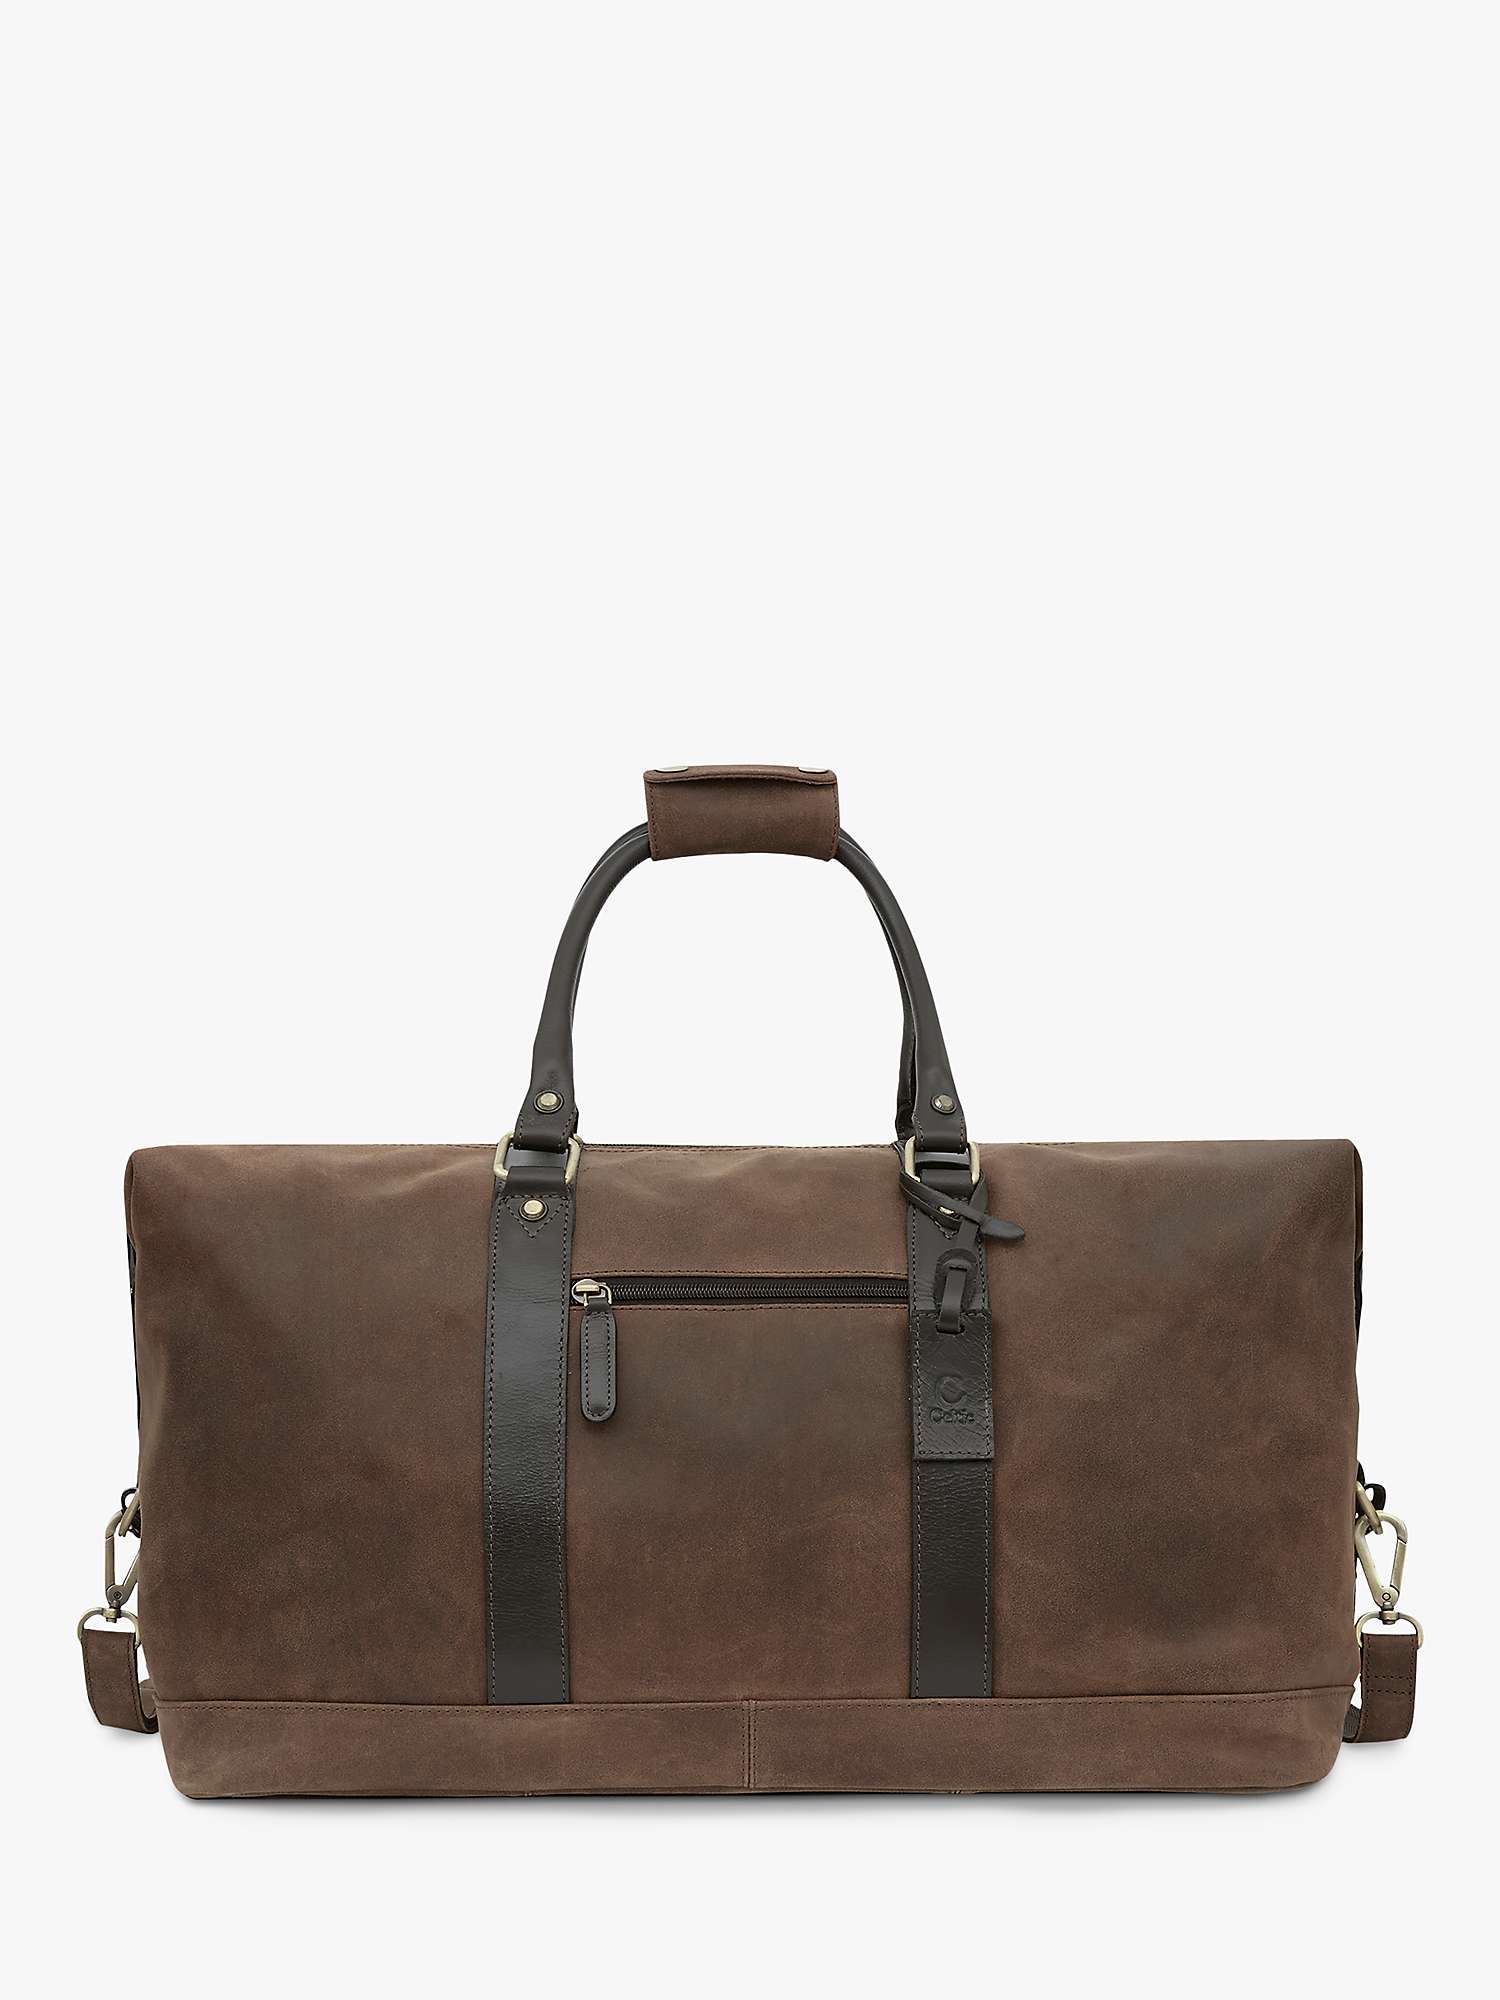 Buy Celtic & Co. Trim Leather Holdall Travel Bag, Brown Online at johnlewis.com